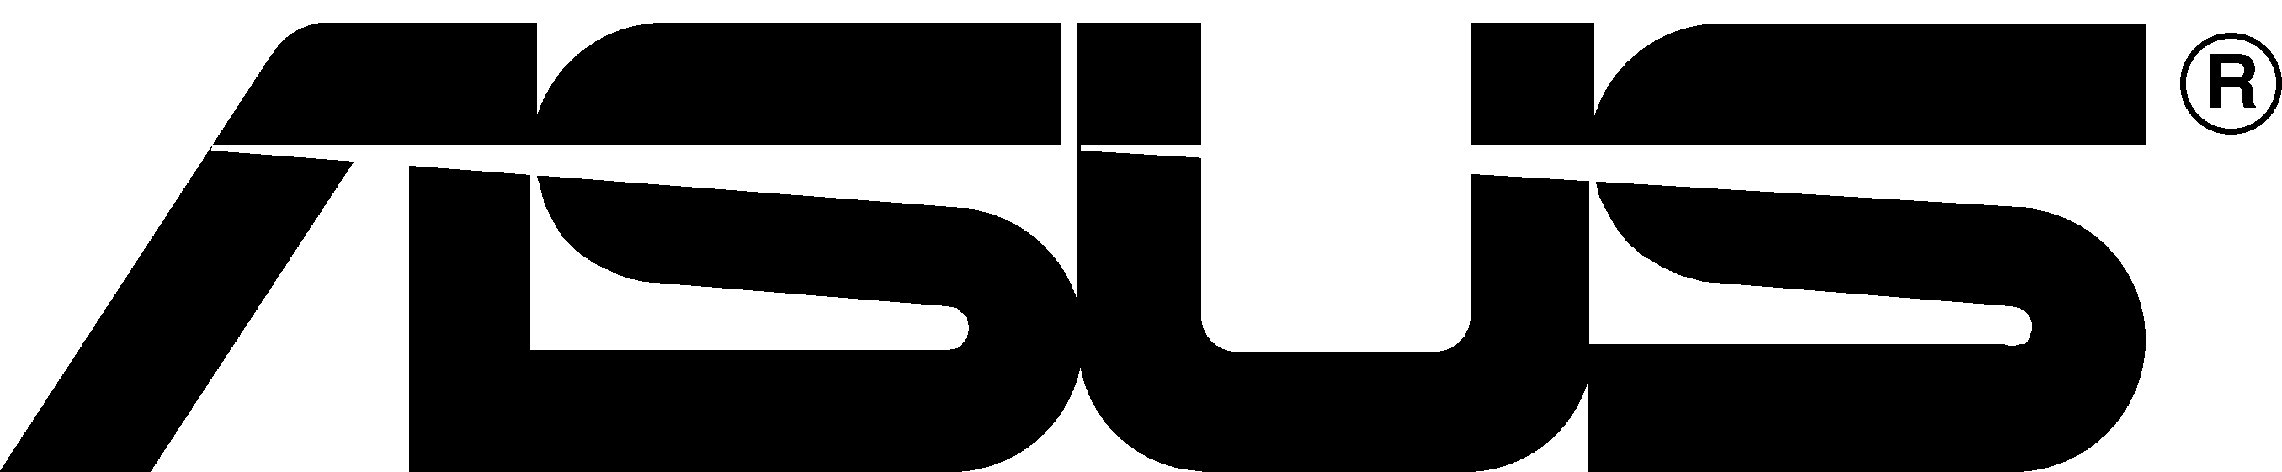 ASUS Brand Logo